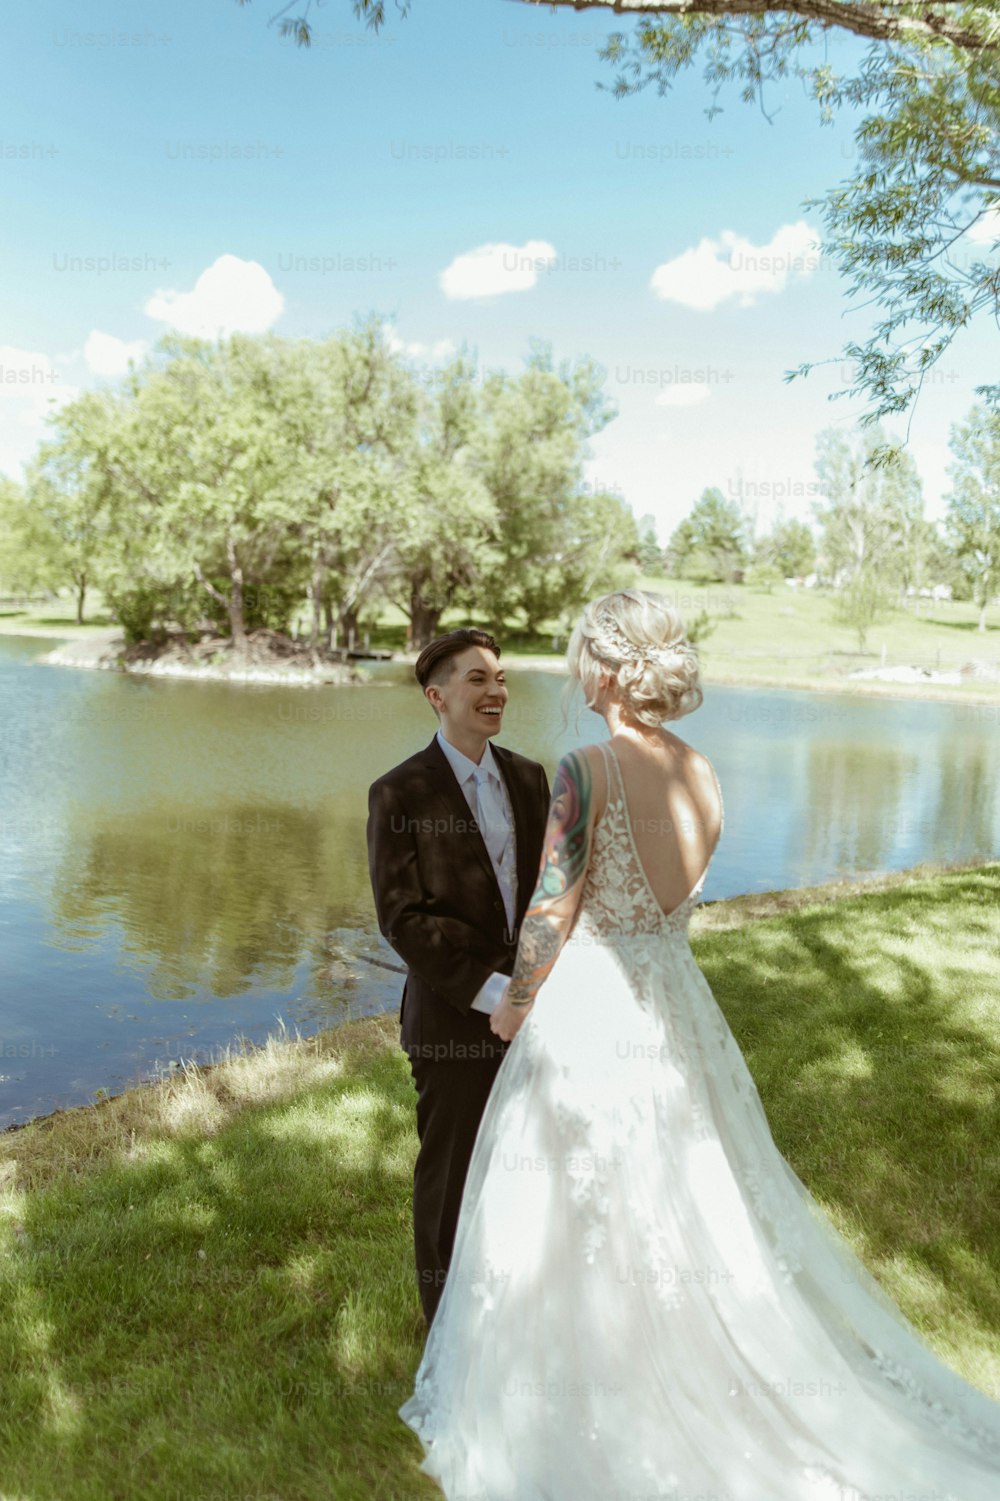 Una sposa e uno sposo in piedi vicino a un lago